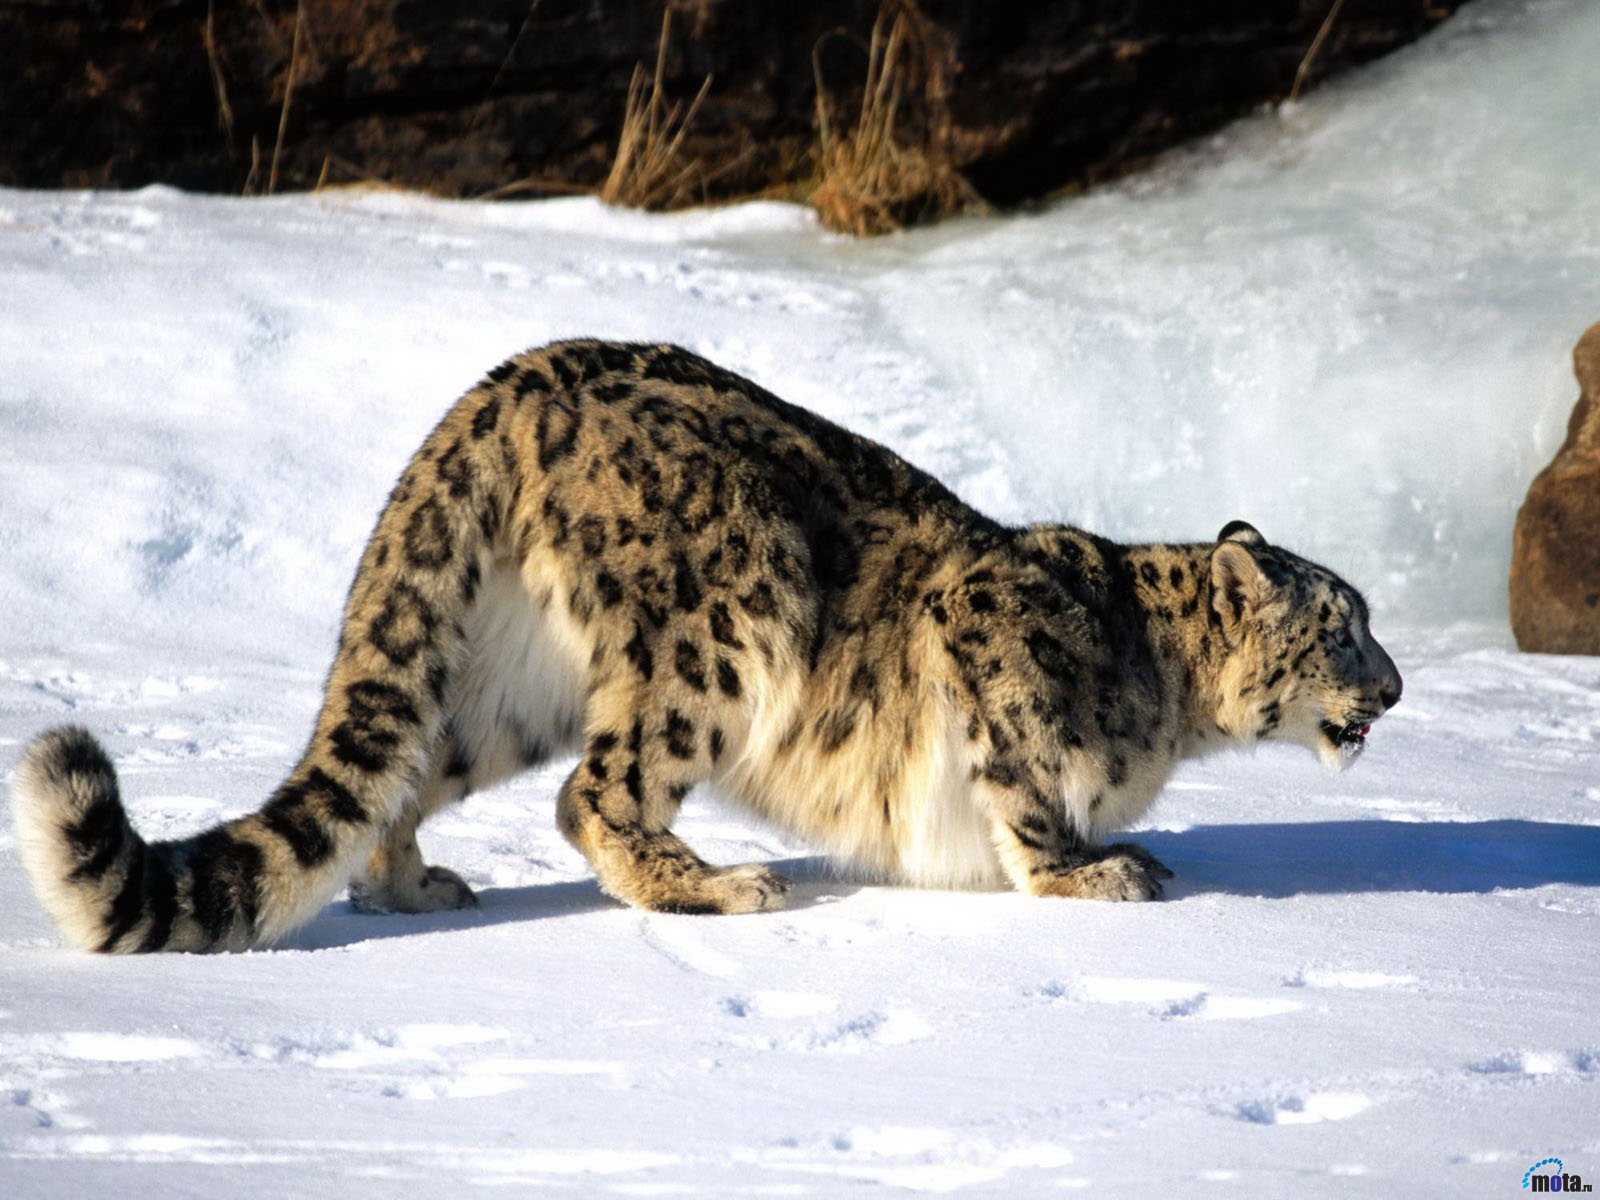 Bilder Große Katze Schneeleopard Tiere 1600x1200 Irbis ein Tier